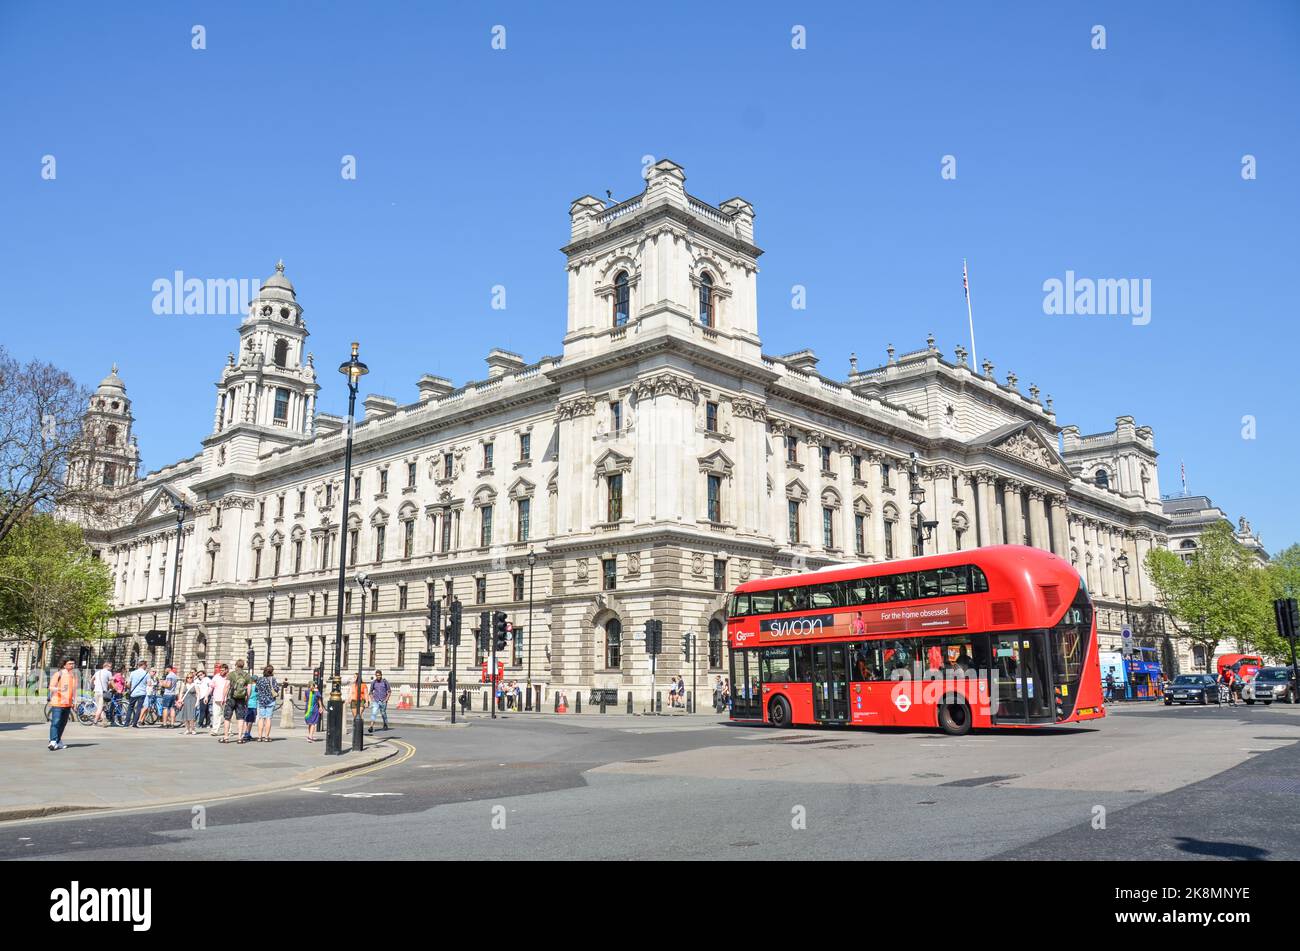 Die Straßen von London, Großbritannien, mit dem Regierungsgebäude, Menschen, die zu Fuß gehen und einem roten Bus. Stockfoto